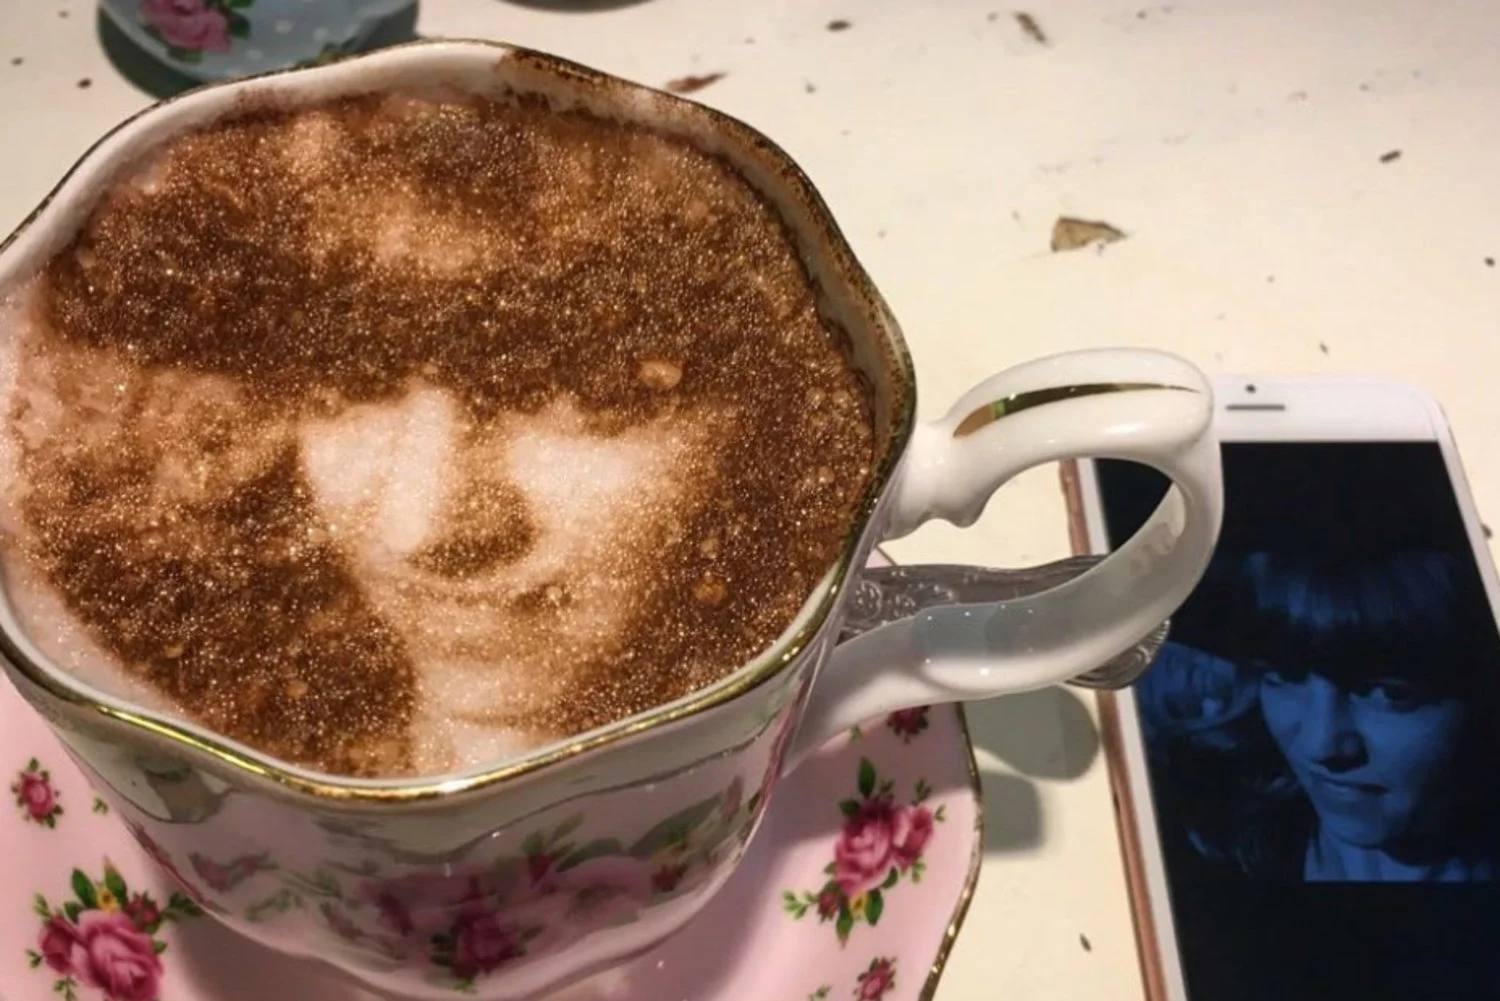 Селфичино: в Лондоне открылось кафе, где можно выпить кофе со своим фото - фото 362104